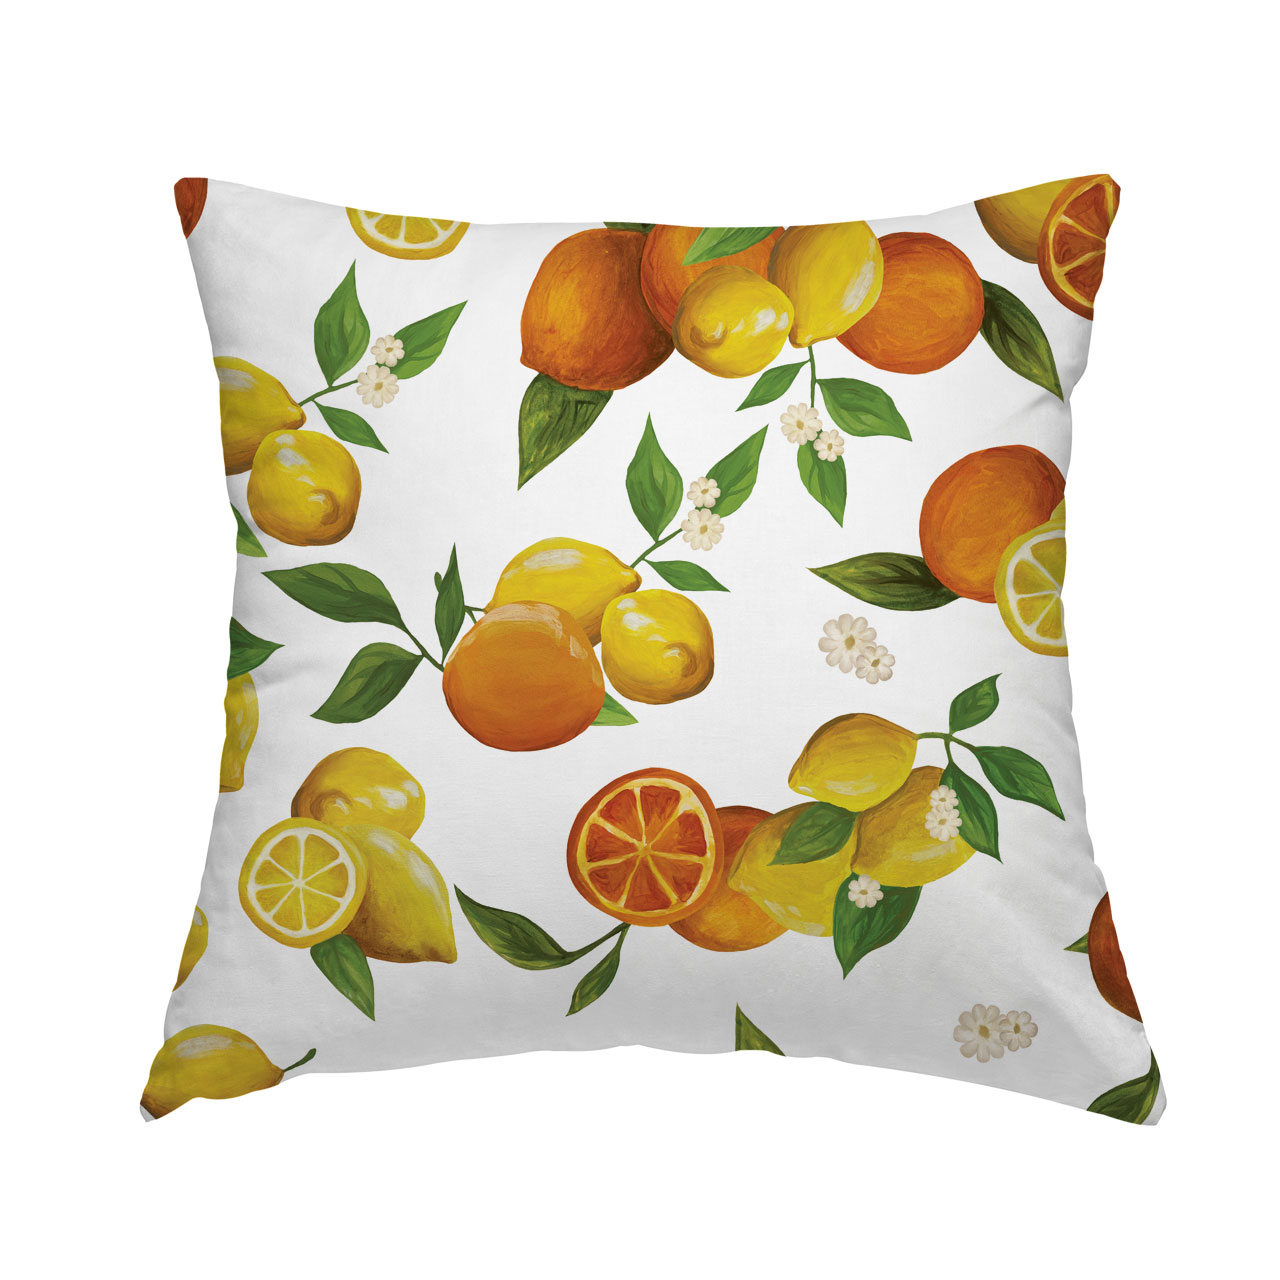 Oranges-Citrus-Fruits-Lemons-Pillow